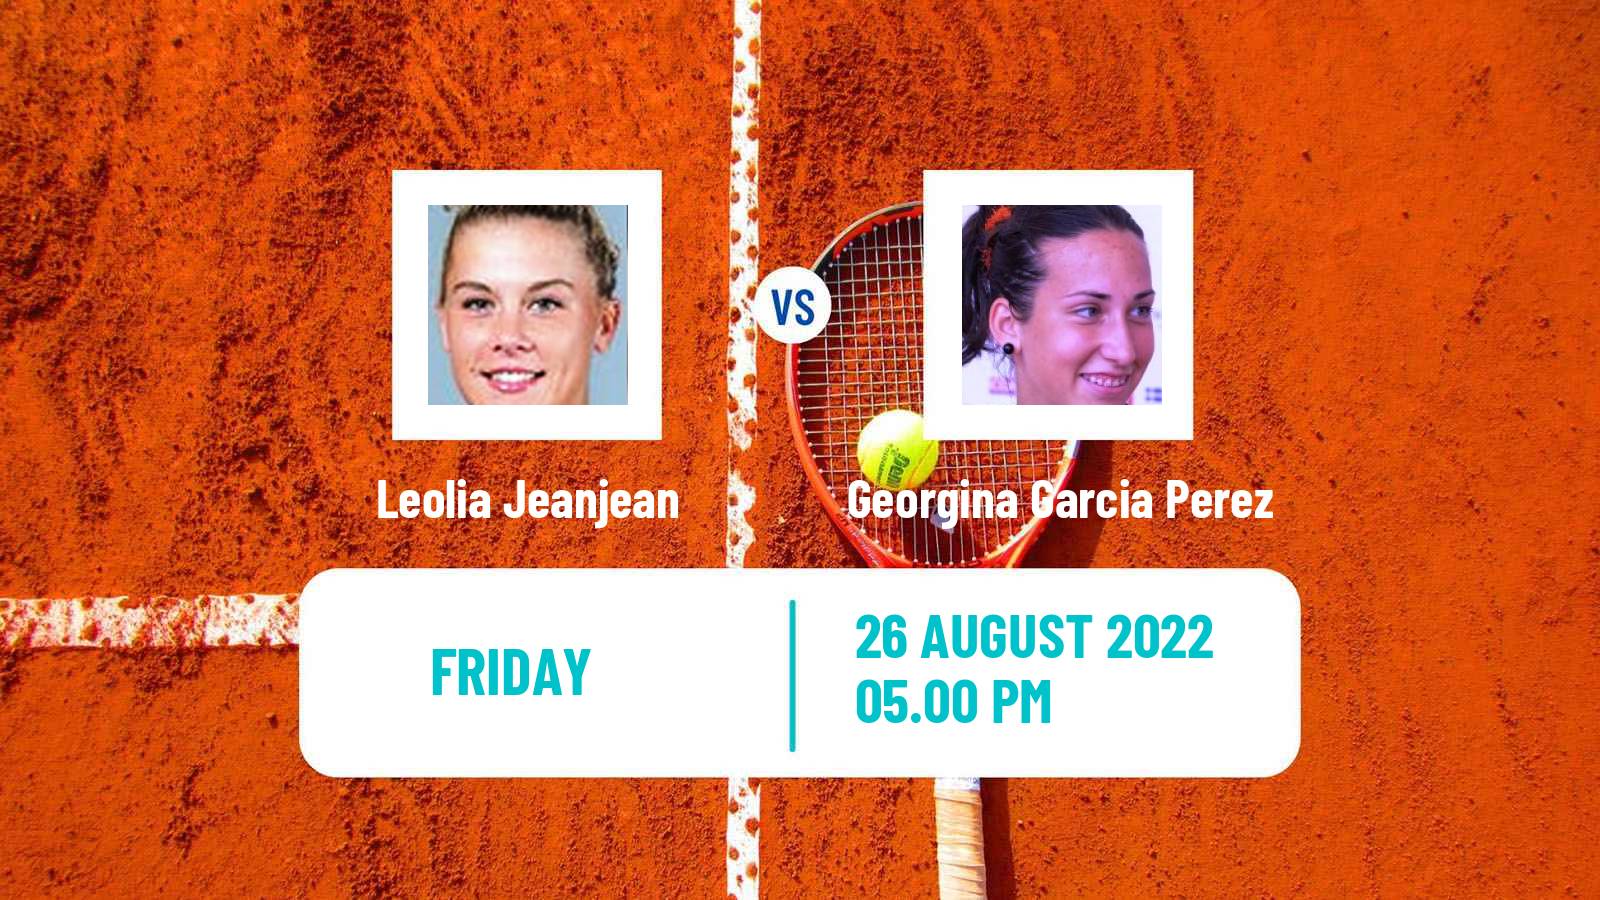 Tennis WTA US Open Leolia Jeanjean - Georgina Garcia Perez